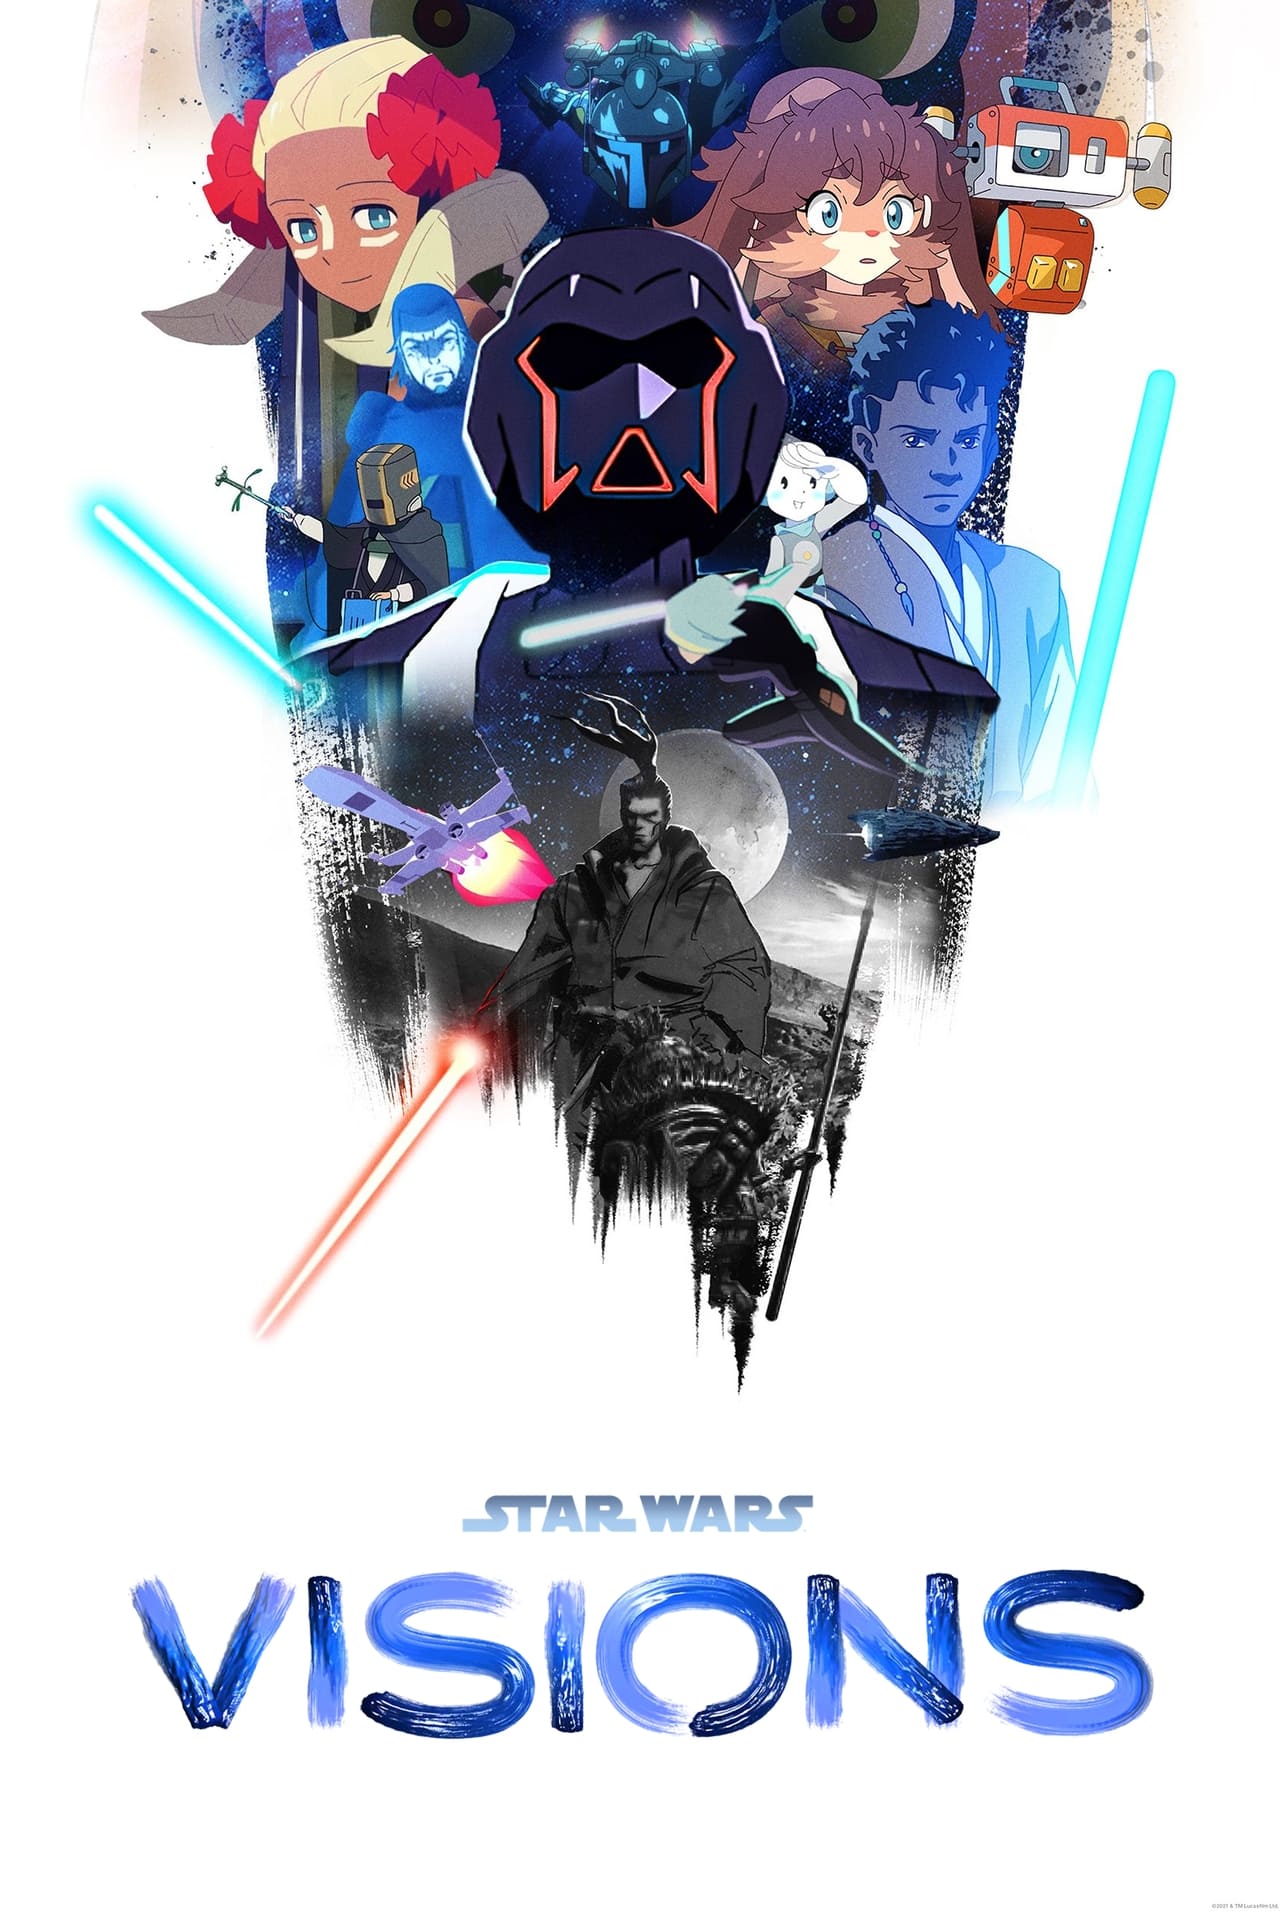 Star Wars: Visions (season 1)